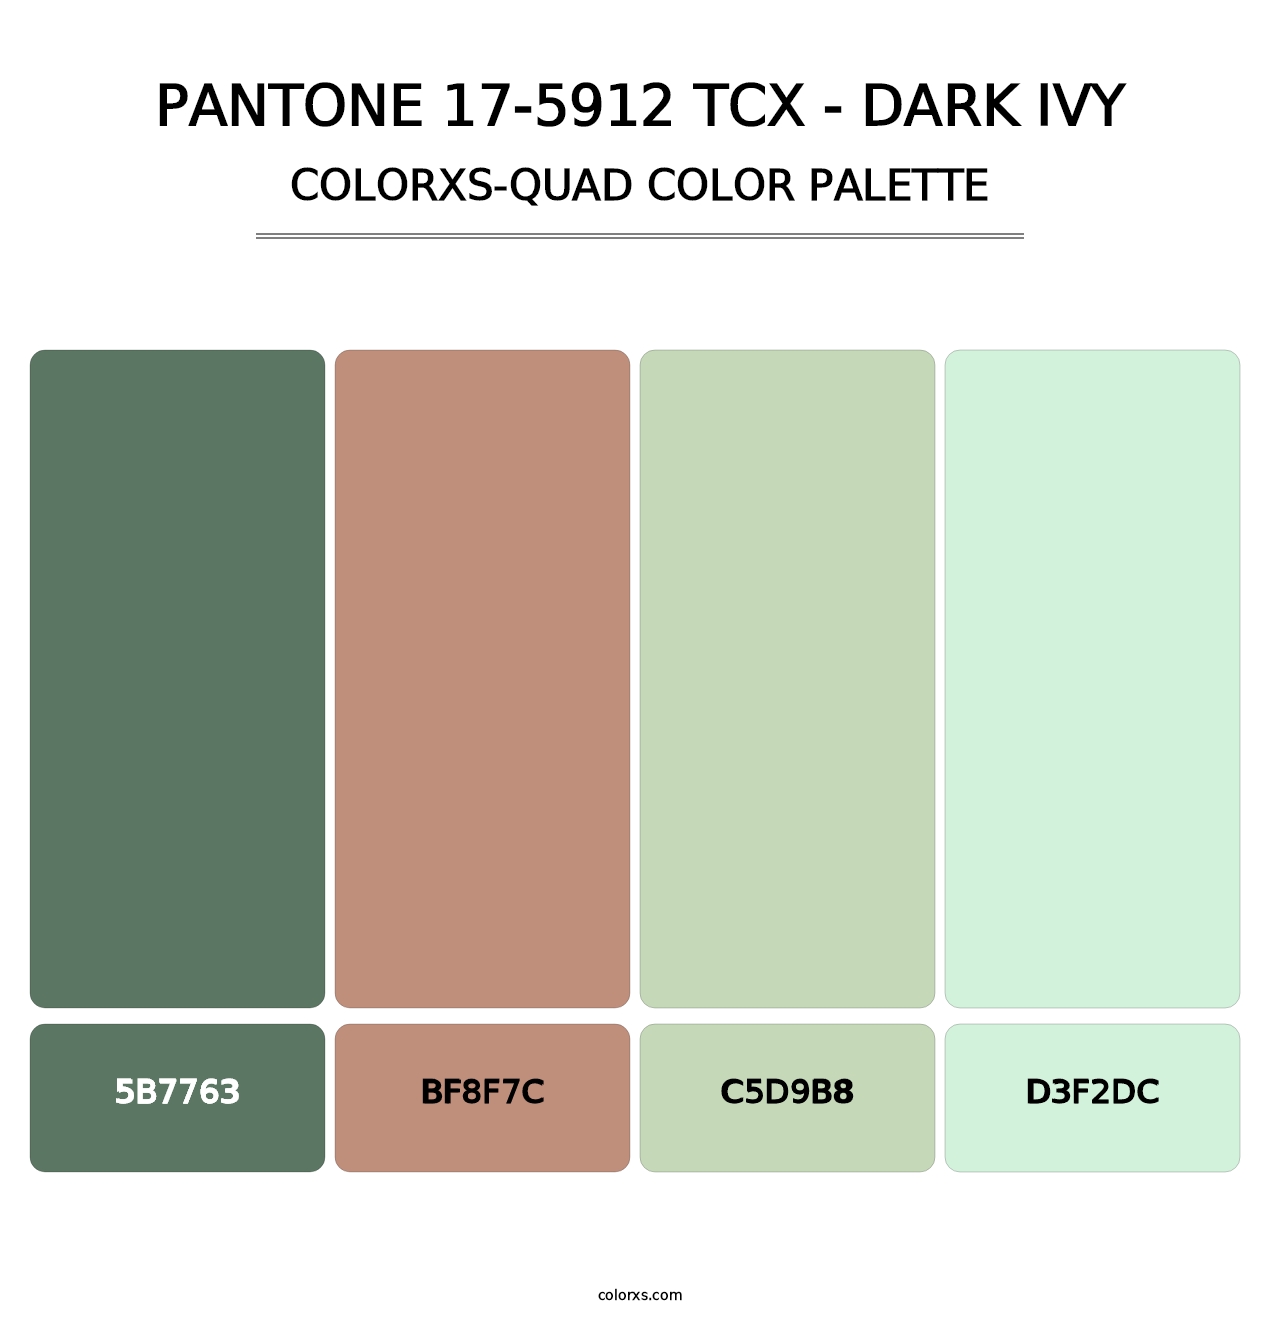 PANTONE 17-5912 TCX - Dark Ivy - Colorxs Quad Palette